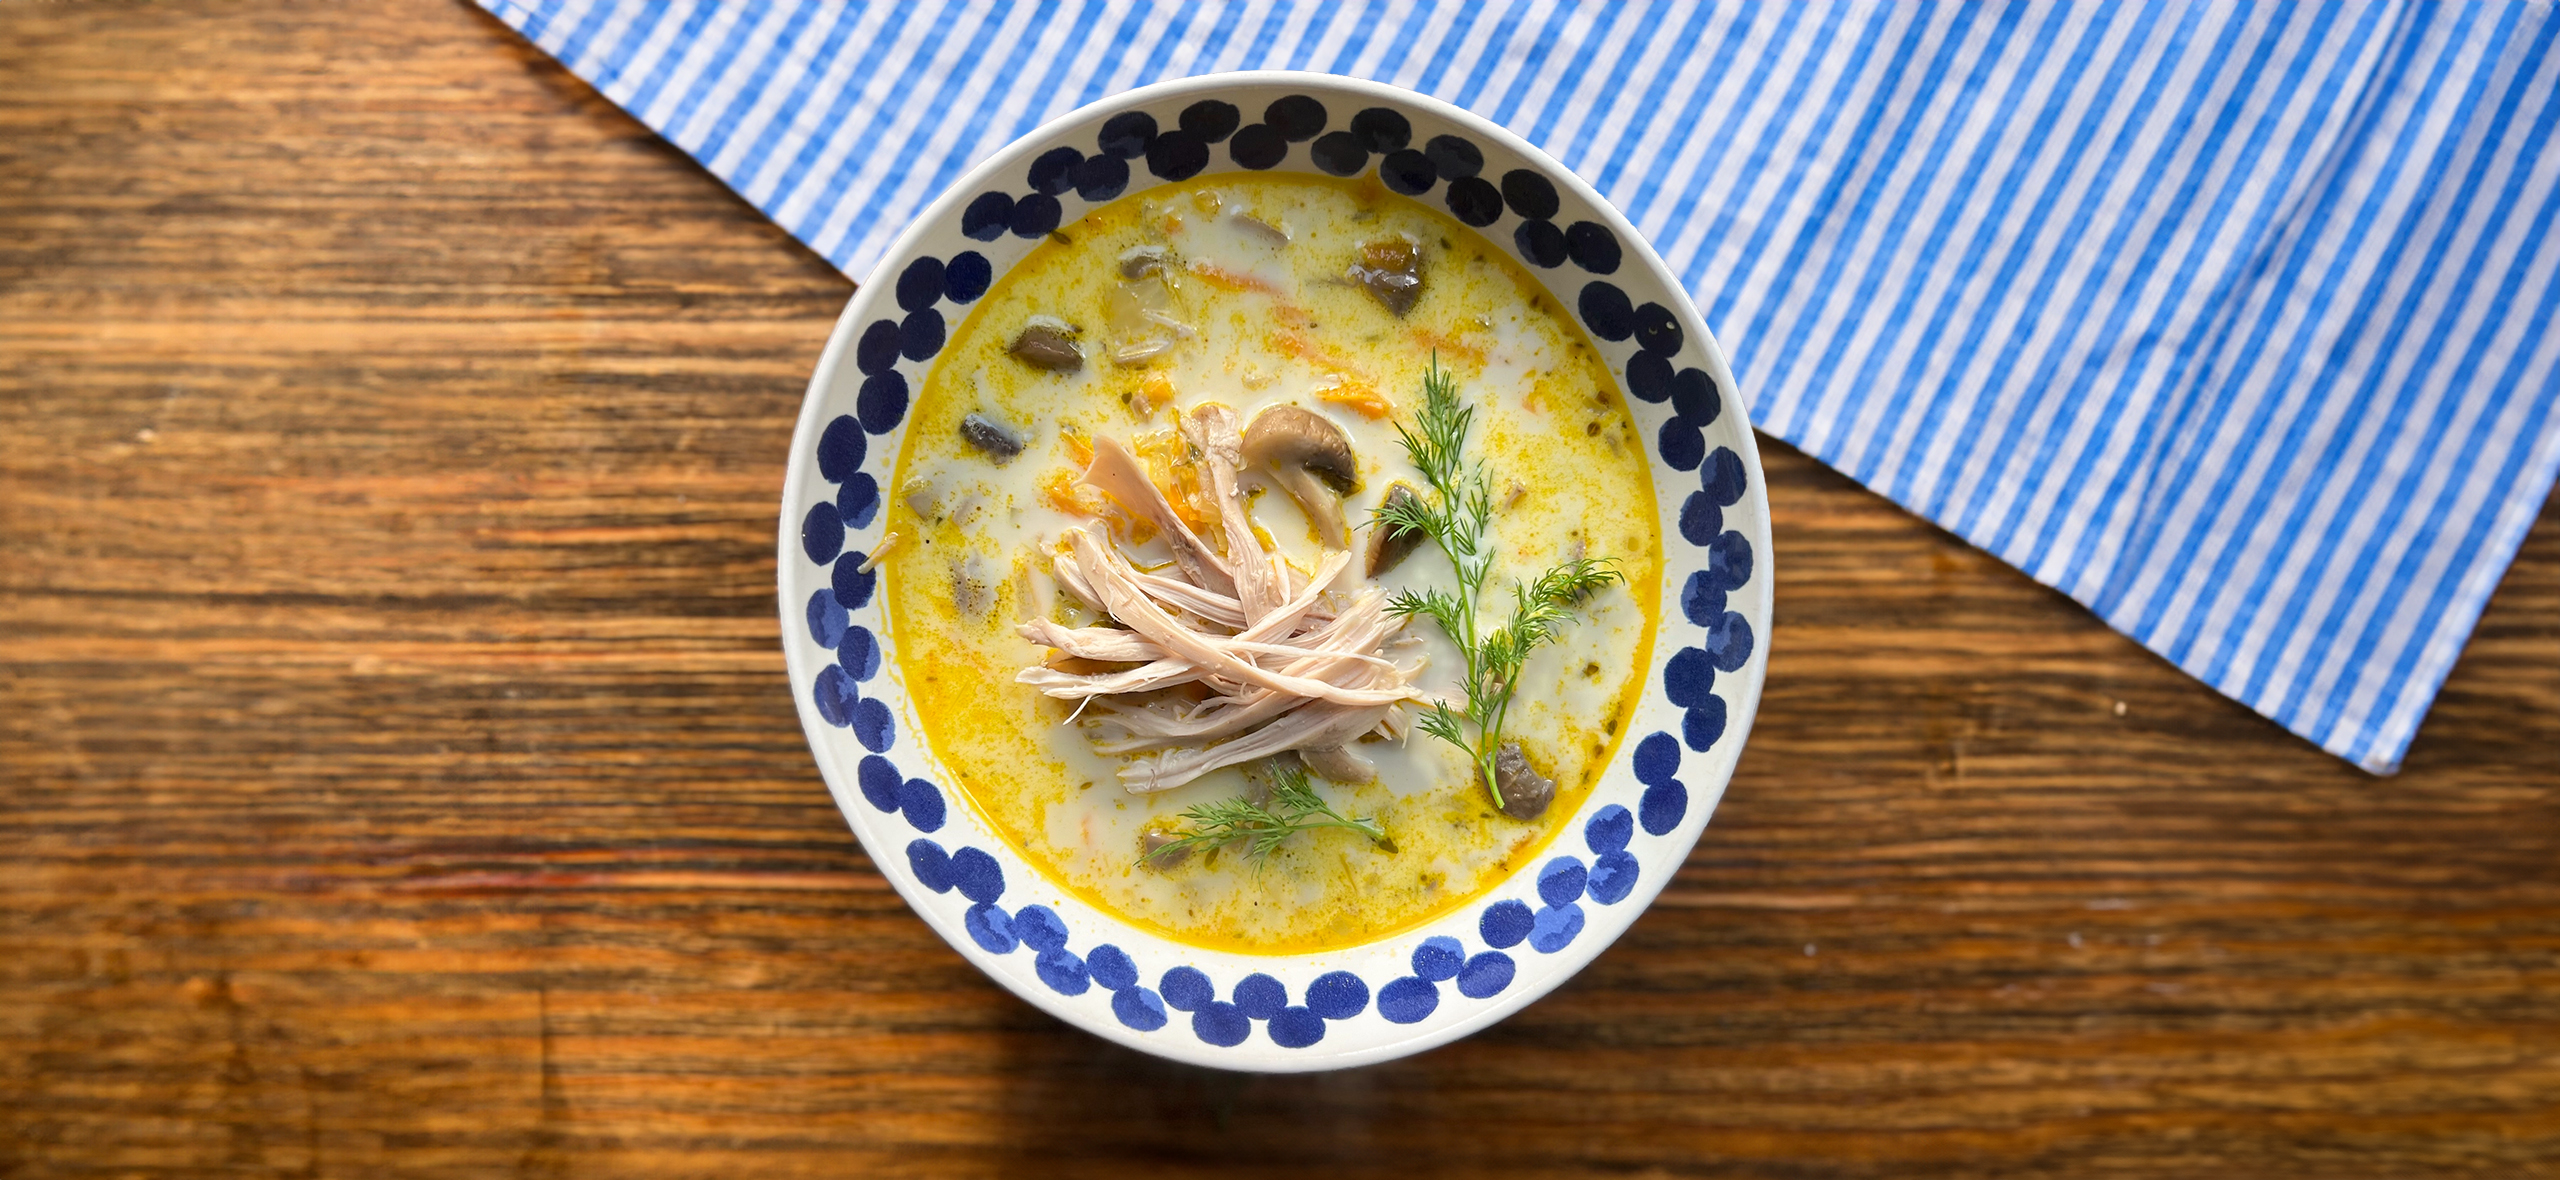 Рецепт согревающего грибного супа с курицей и бурым рисом